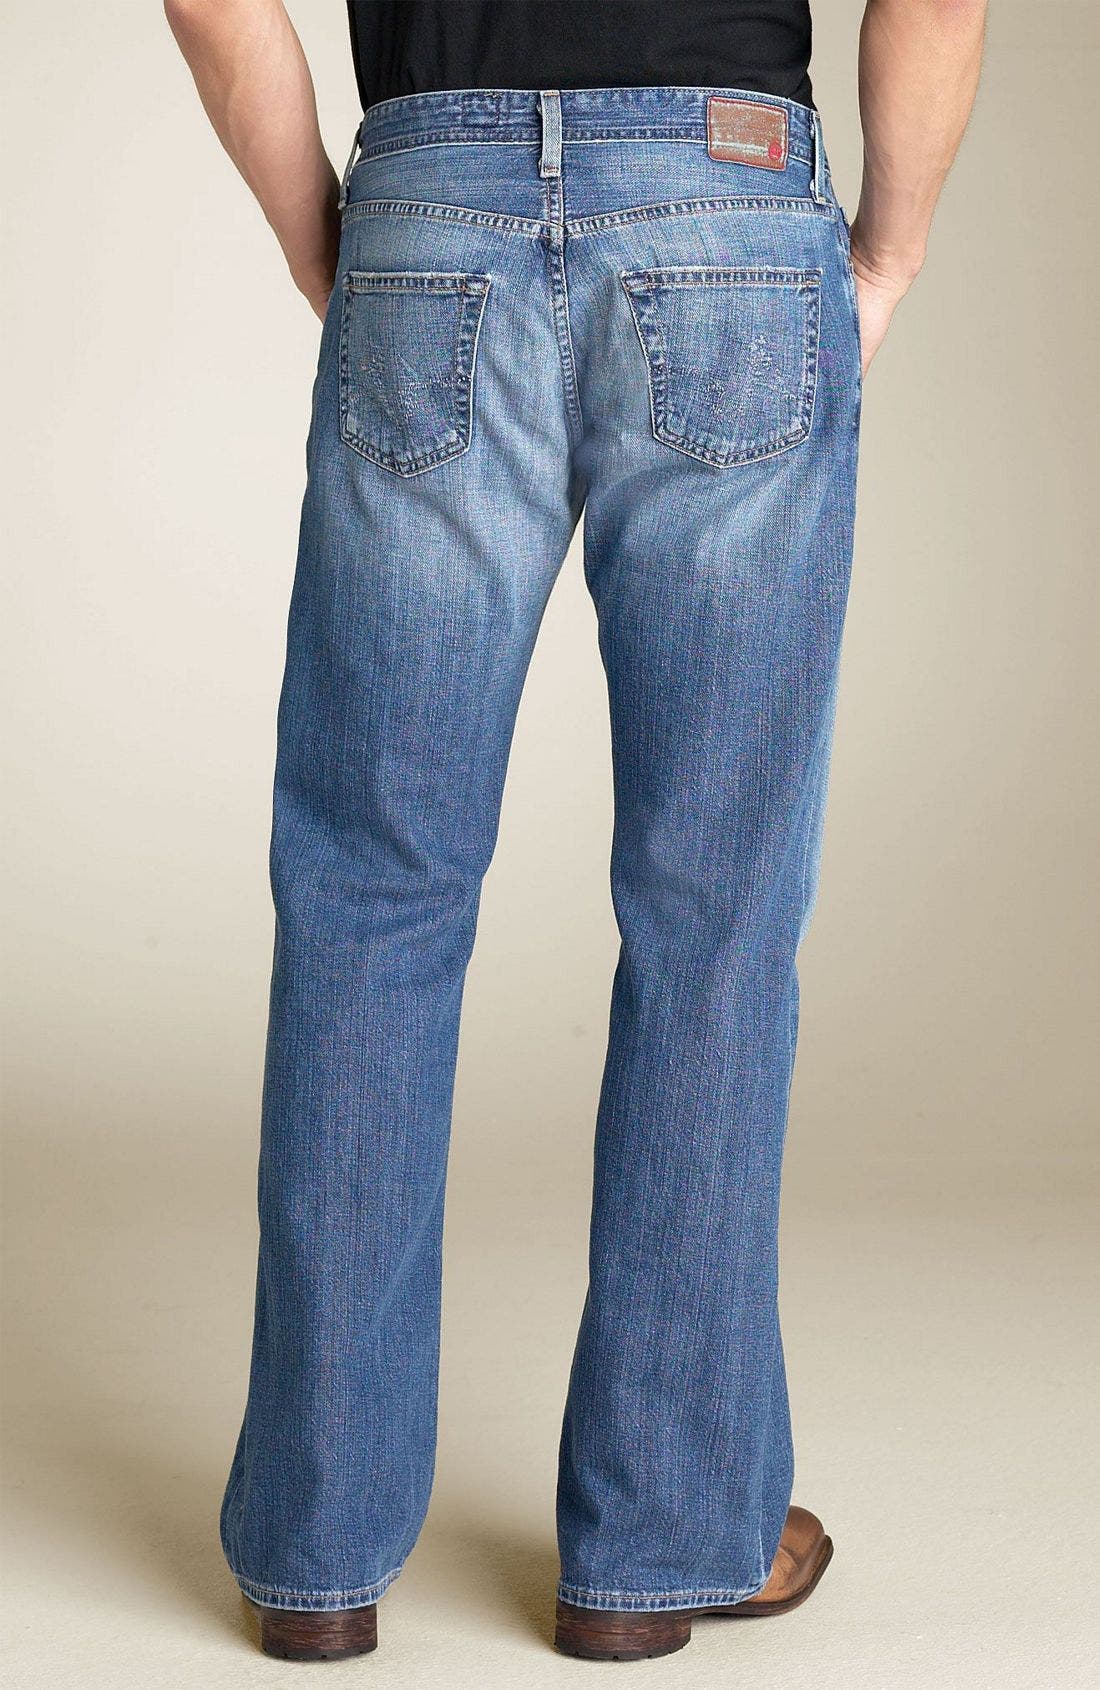 ag fillmore jeans